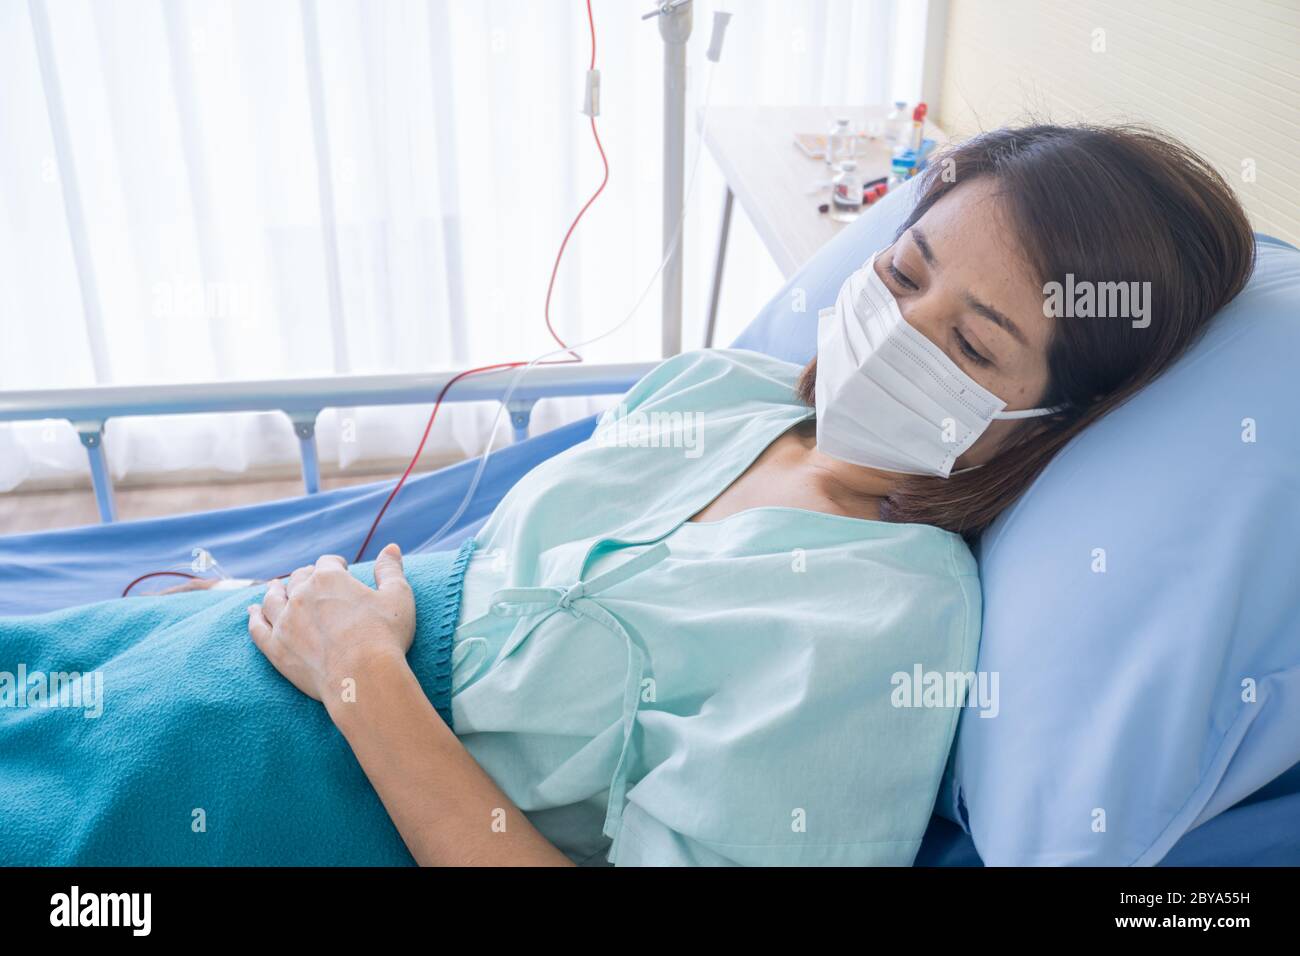 Asiatische Frau ist krank hat hohes Fieber, Niesen, erholt sich im Kleid  des Patienten auf dem Patientenbett im Krankenhaus mit Gesichtsmasken zu  schützen lag Stockfotografie - Alamy